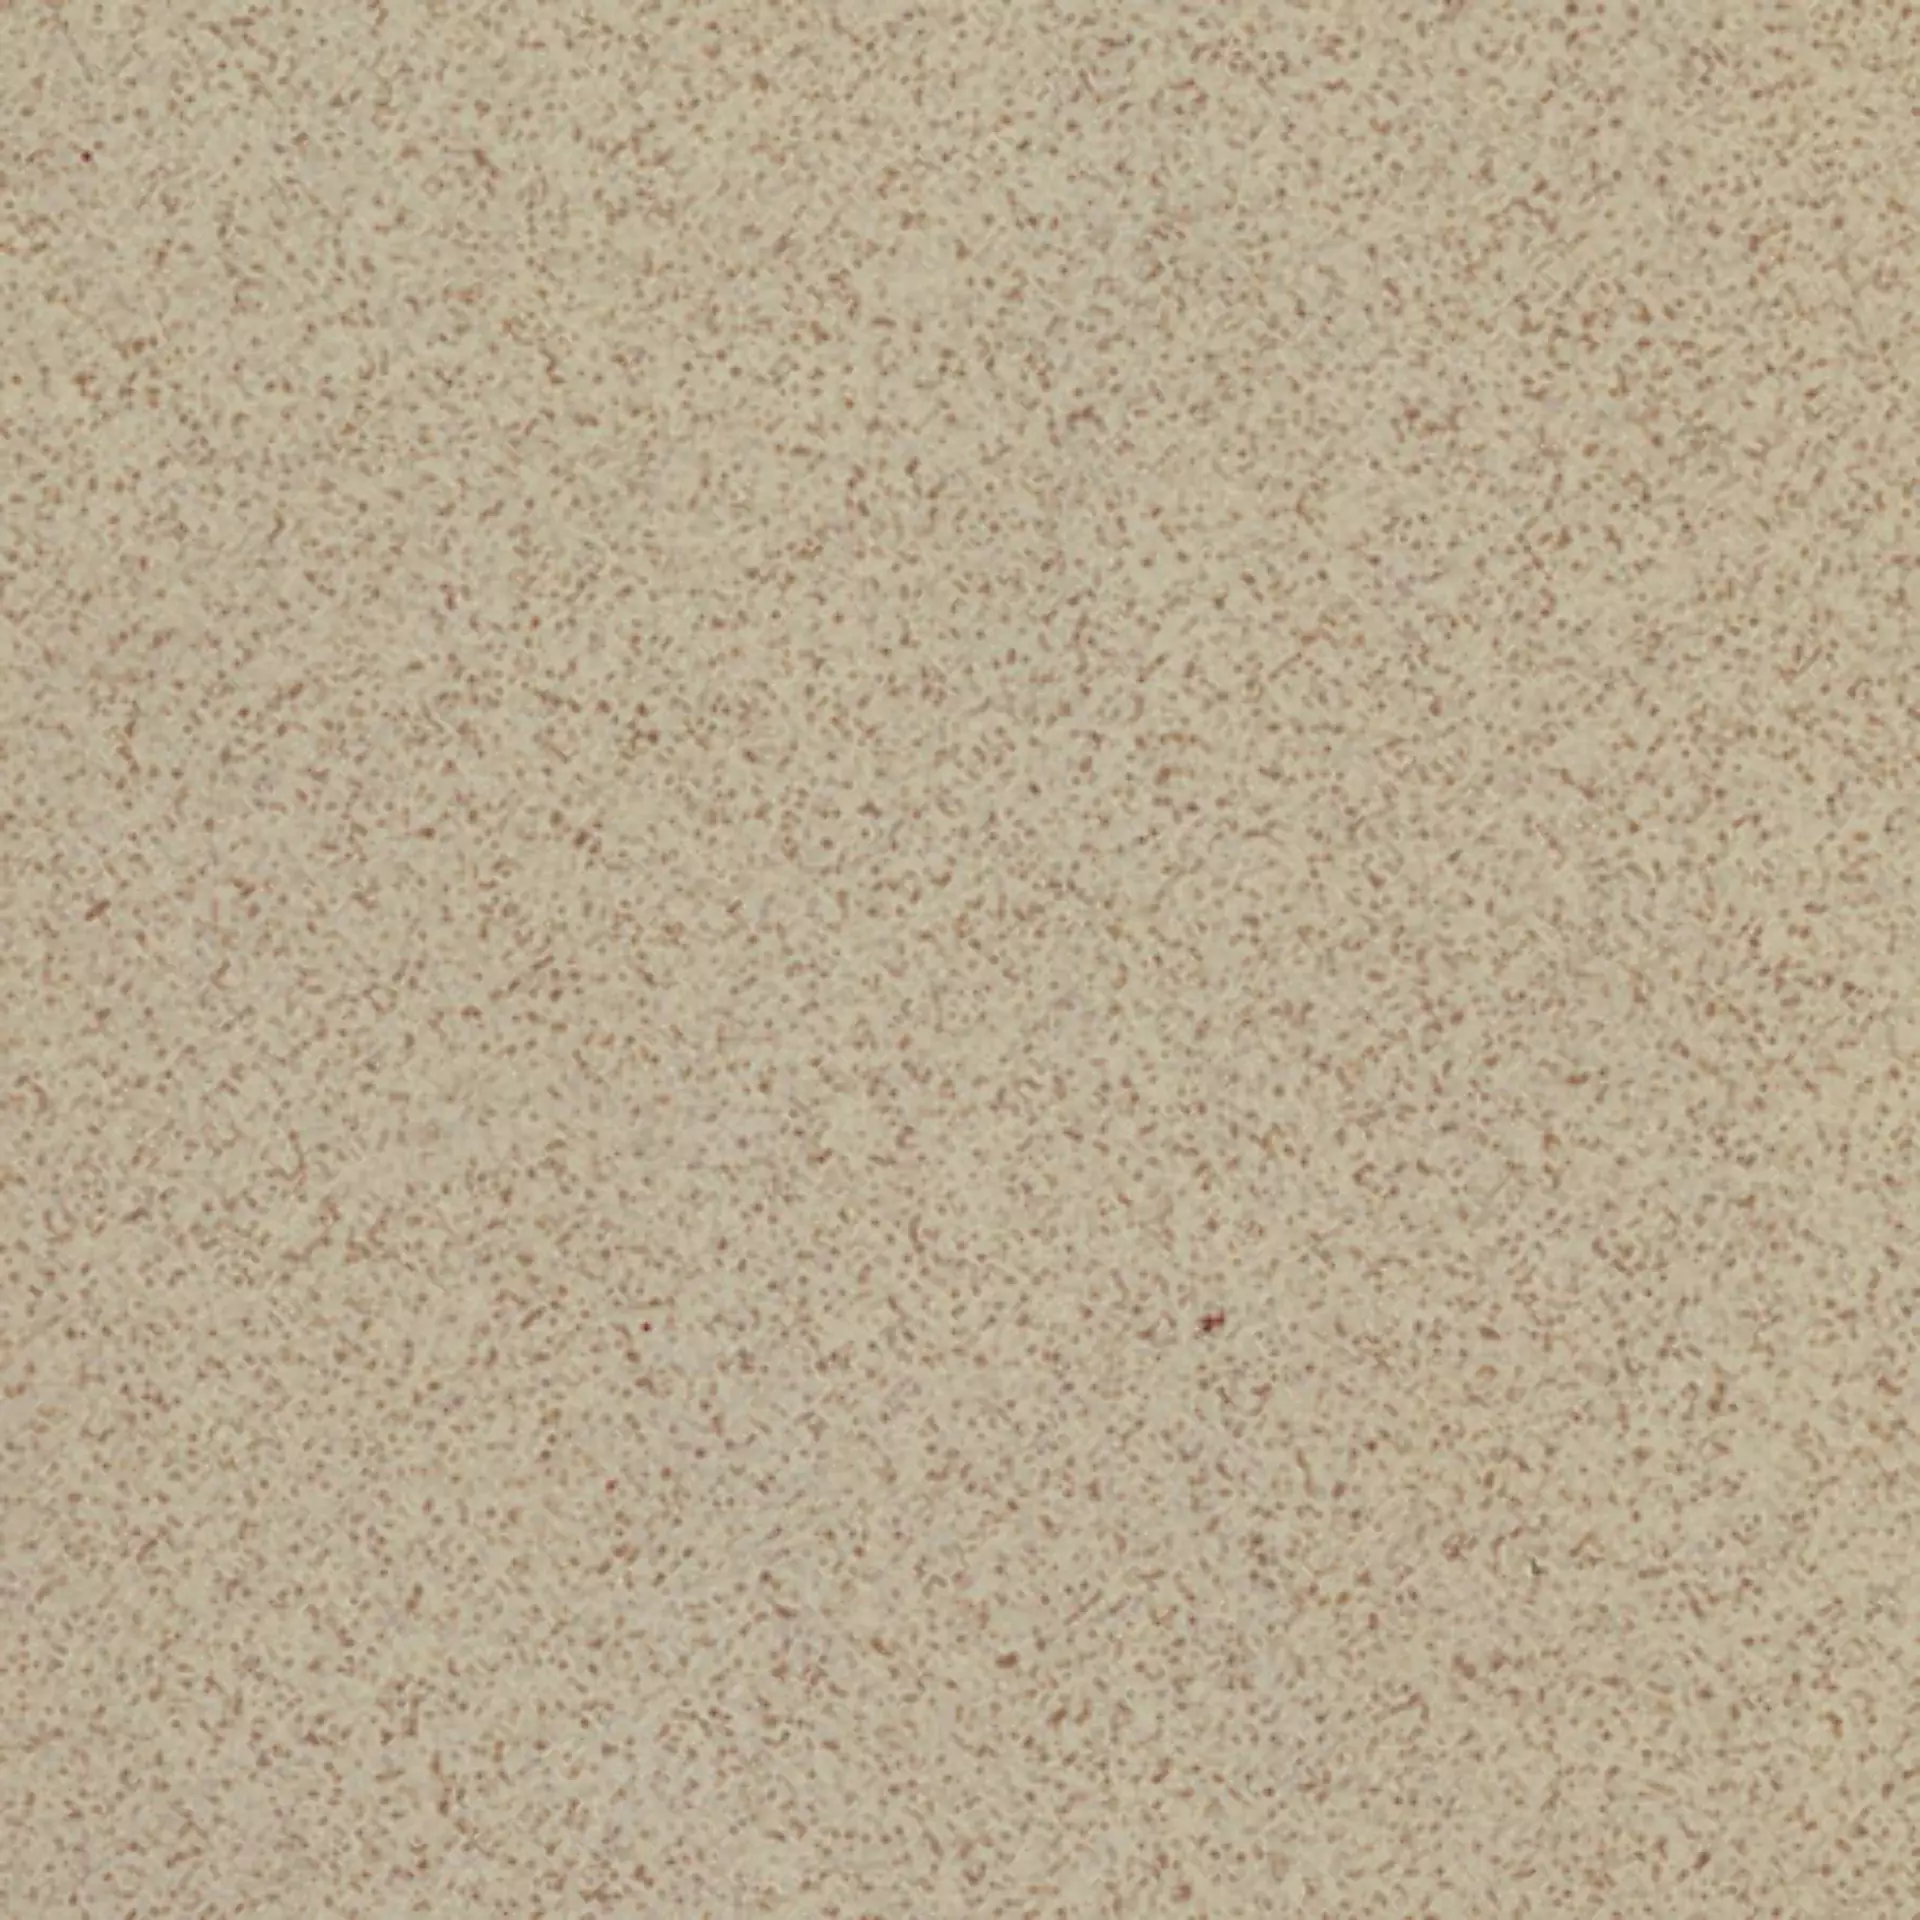 Casalgrande Granito 1 Sahara Naturale – Matt 700122 30x30cm 8mm